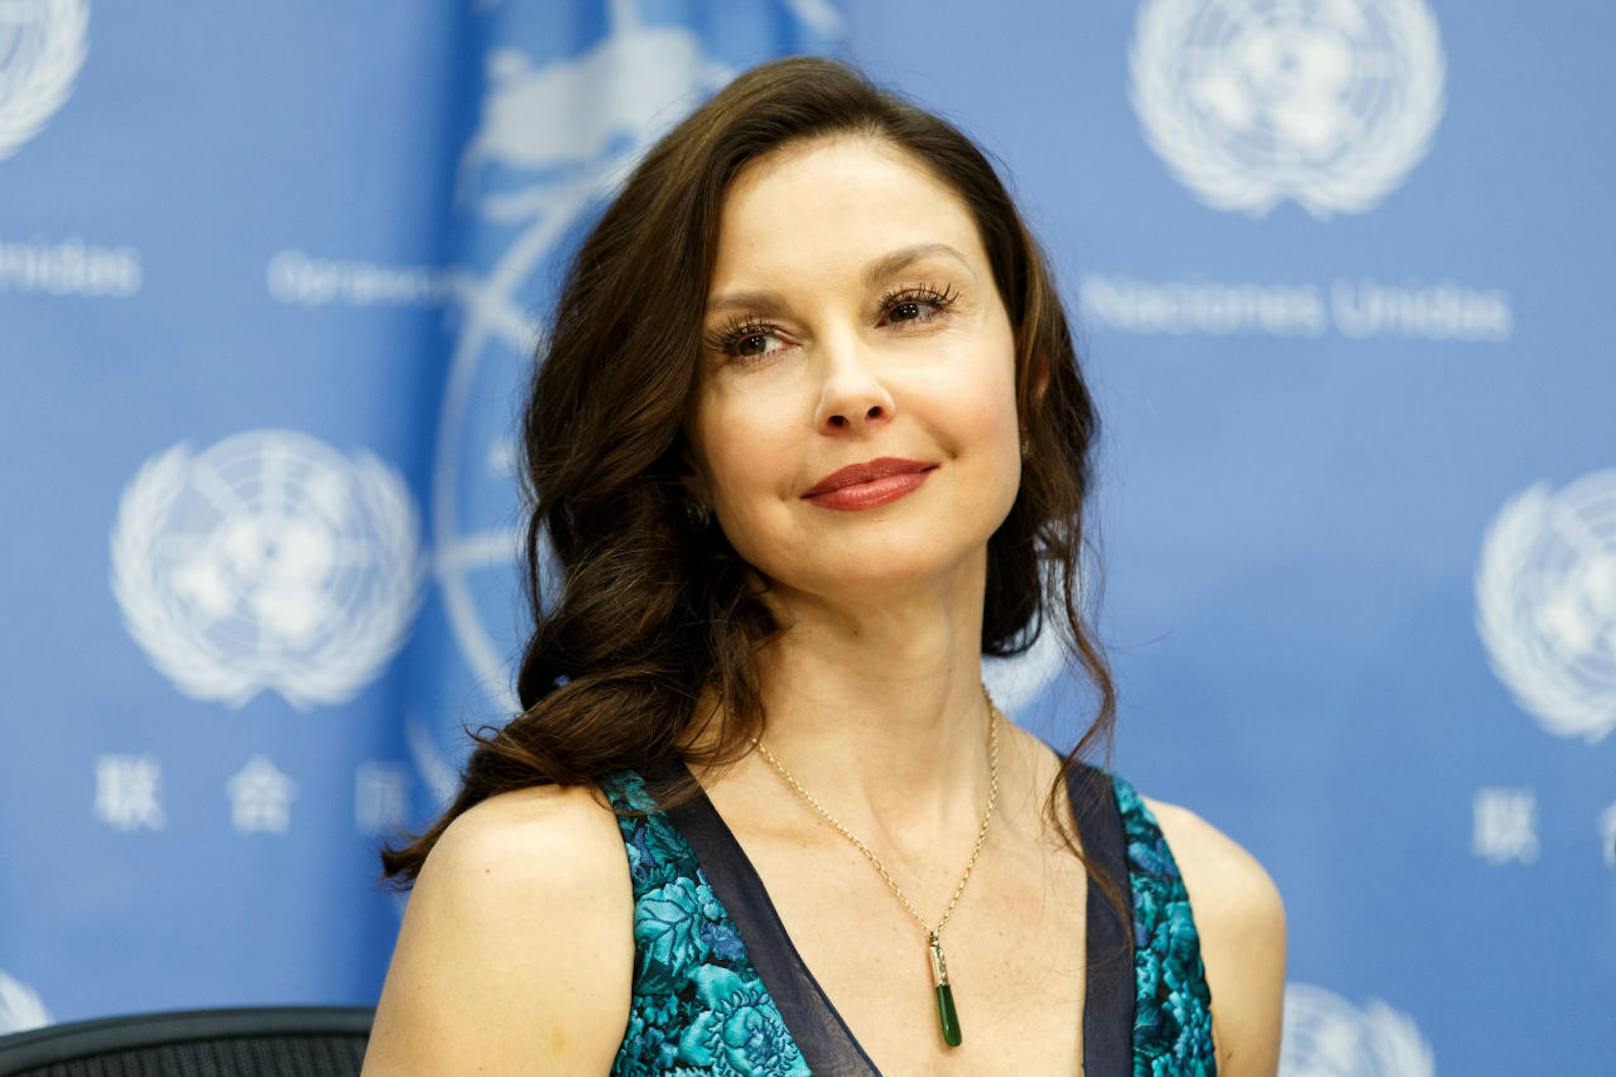 Schauspielerin Ashley Judd hat US-Produzent Harvey Weinstein wegen sexueller Belästigung angeklagt. Er soll sie gefragt haben, ob sie ihn "nackt massieren könne".